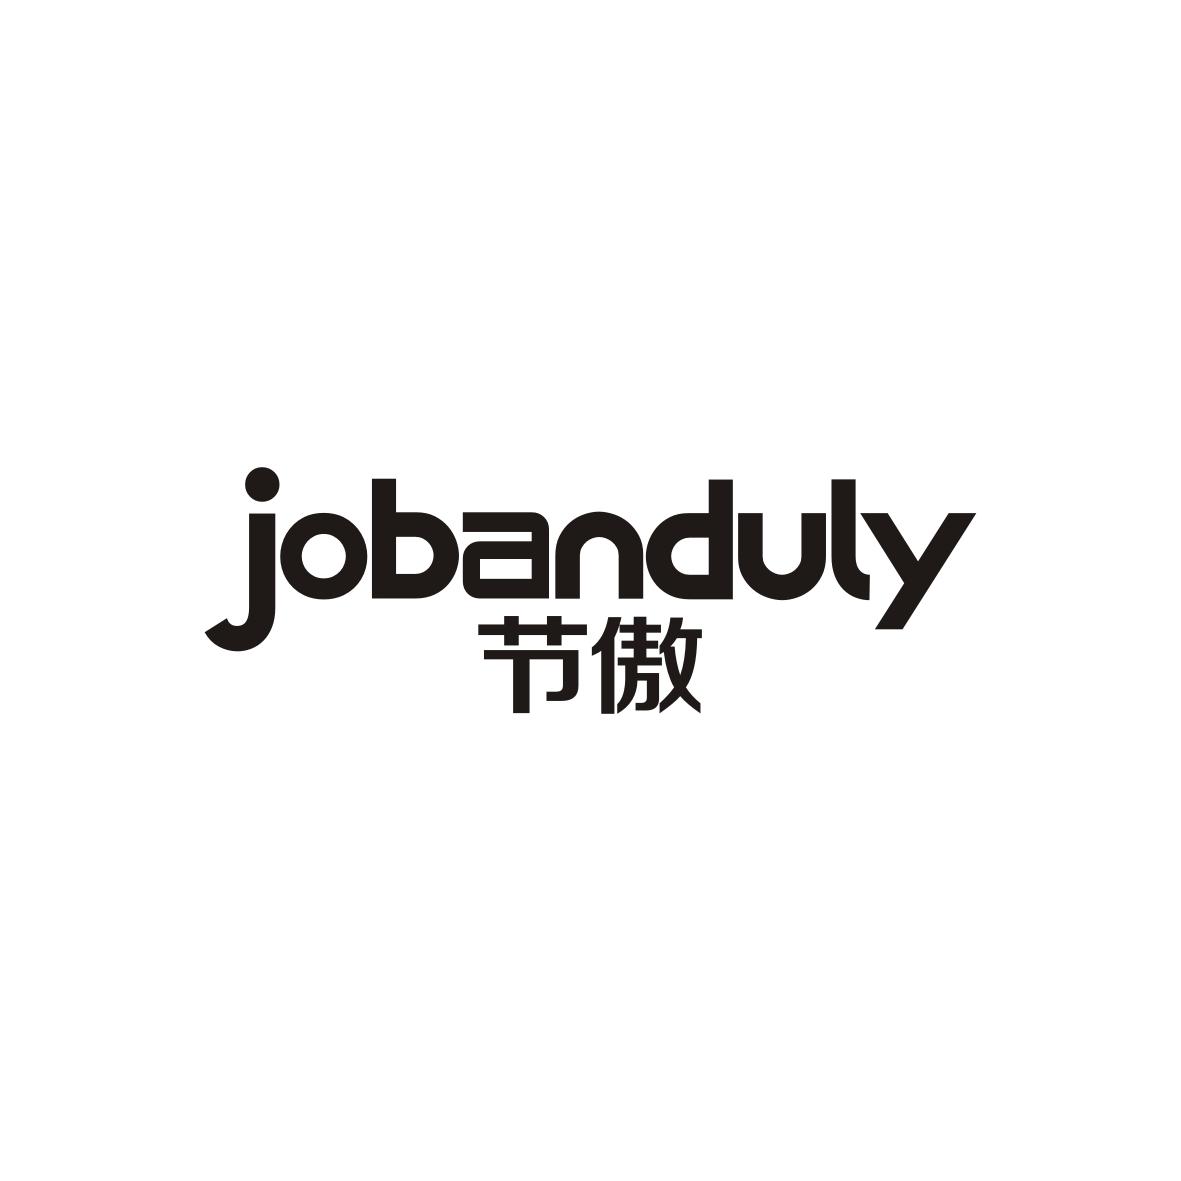 刘俊商标节傲 JOBANDULY（09类）商标转让流程及费用